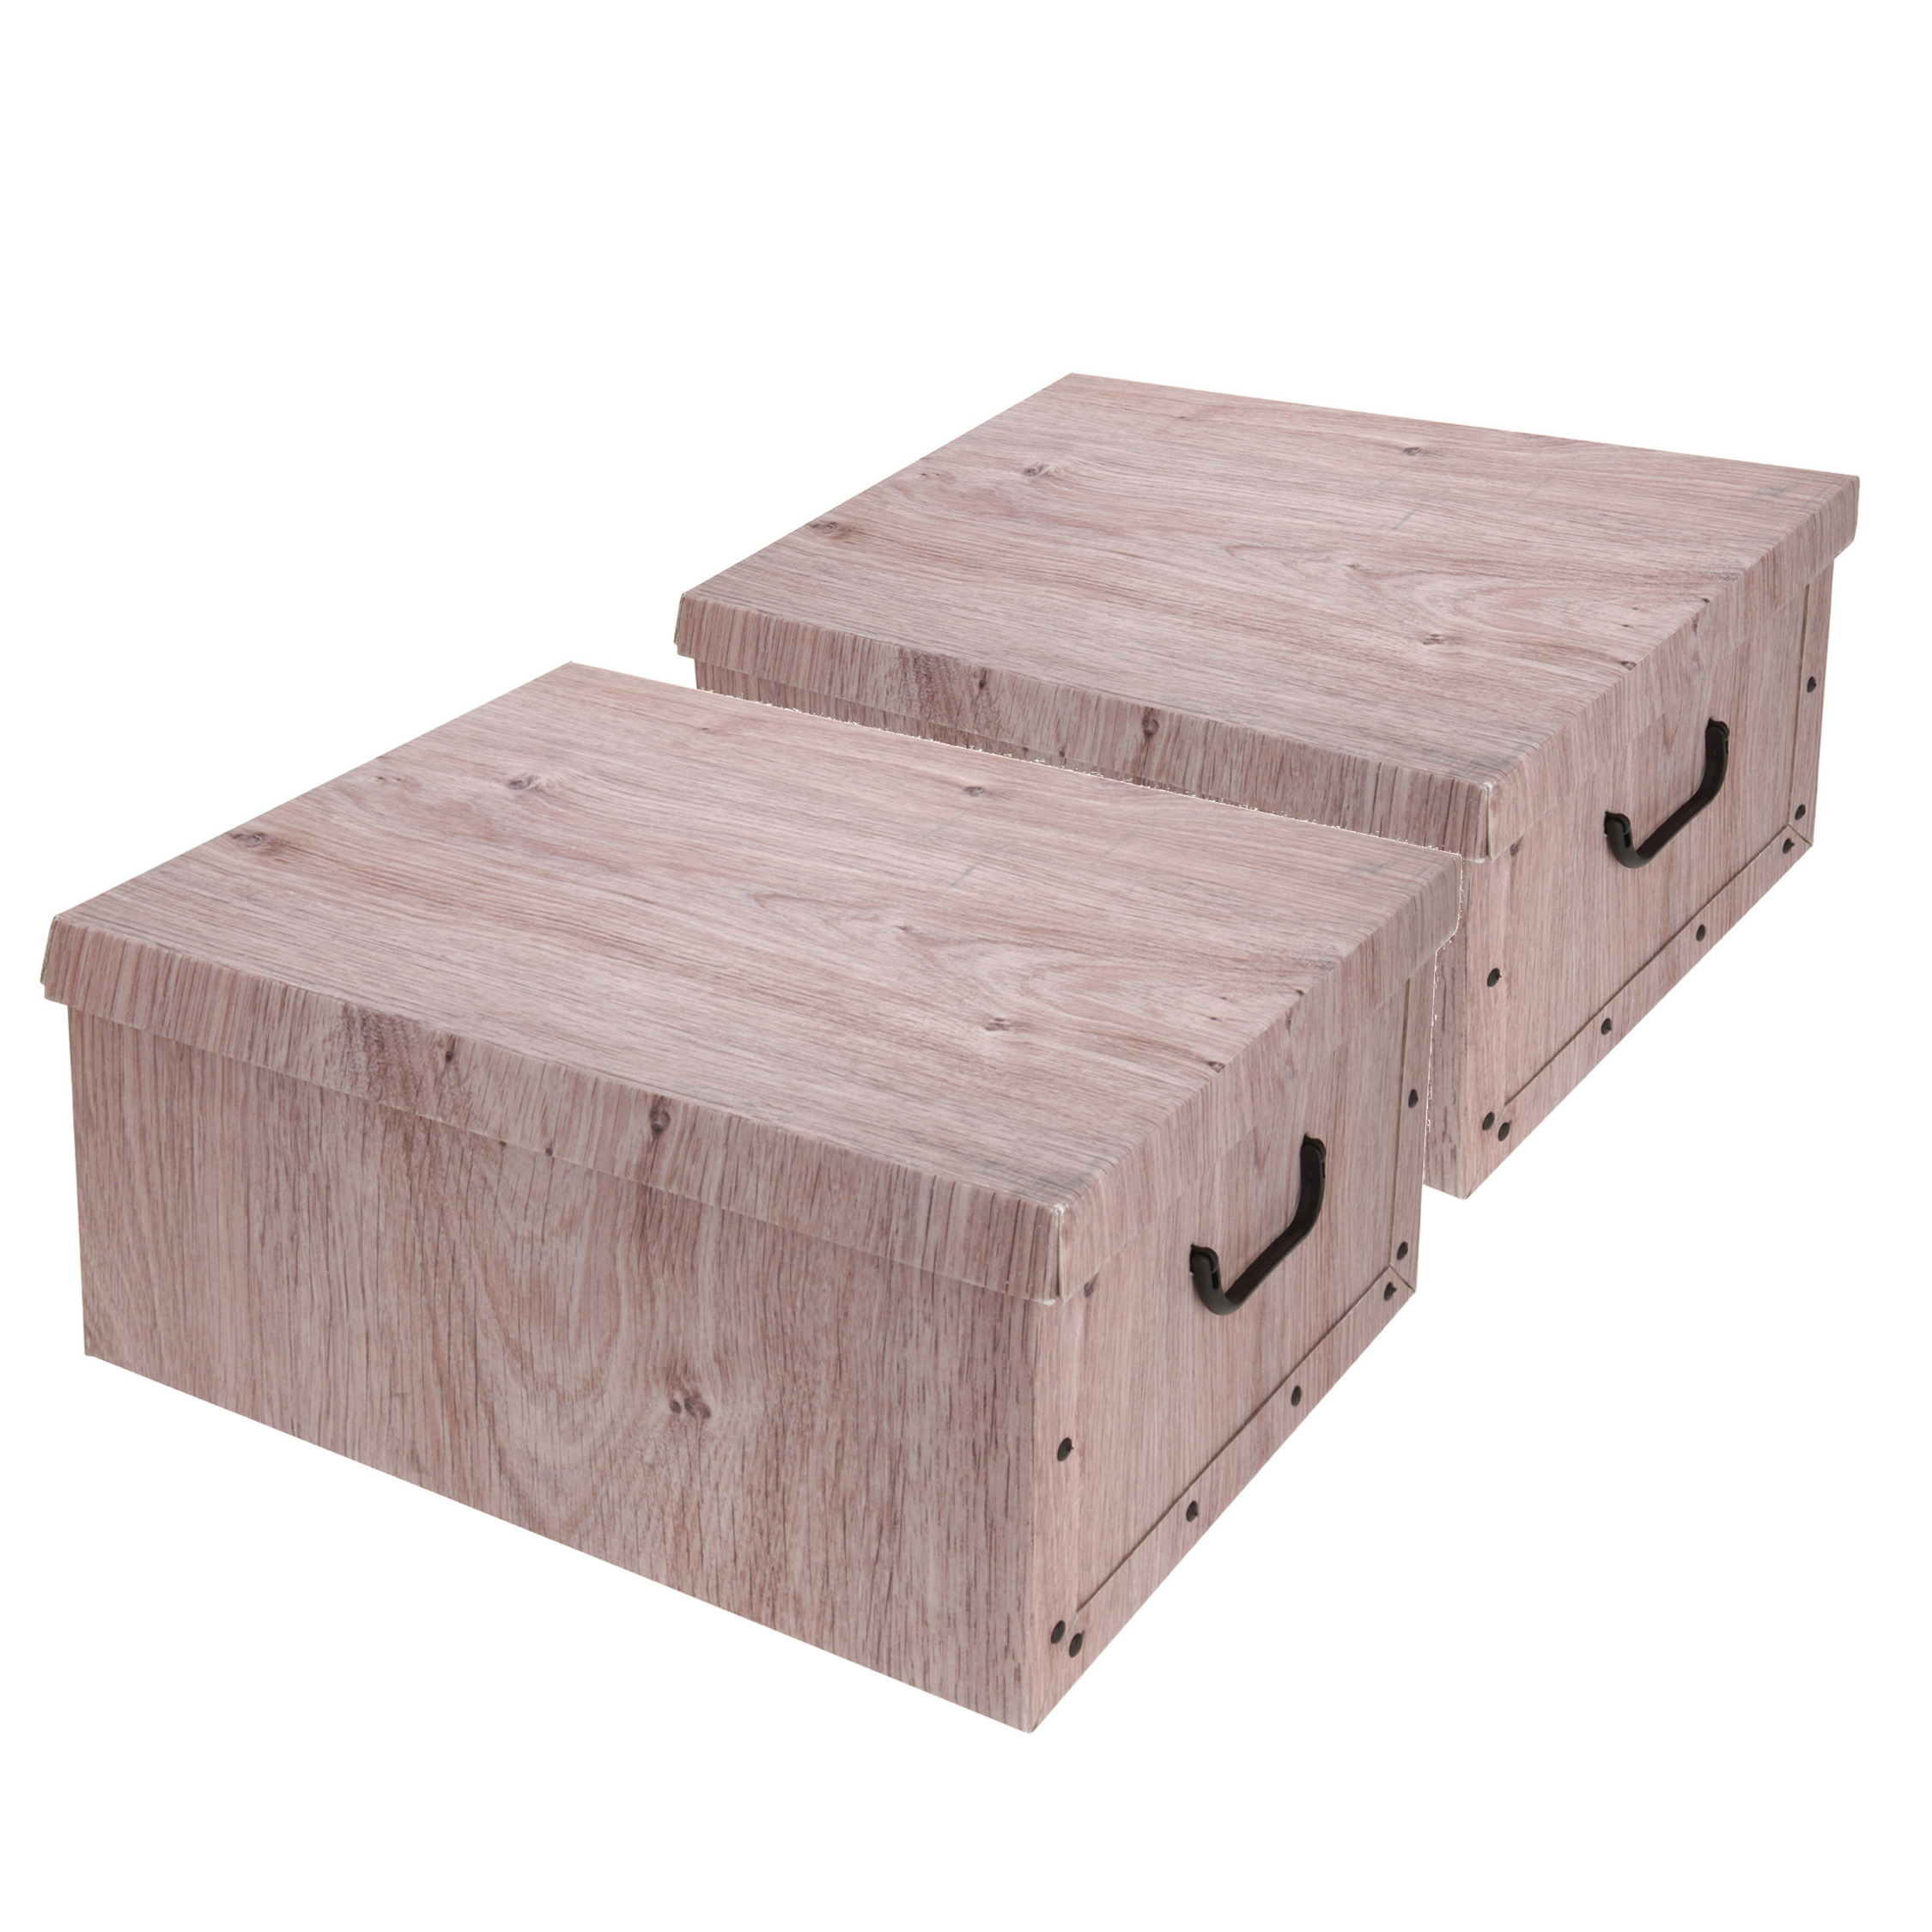 Set van 4x stuks opbergdoos-opberg box van karton met hout print bruin 37 x 30 x 16 cm